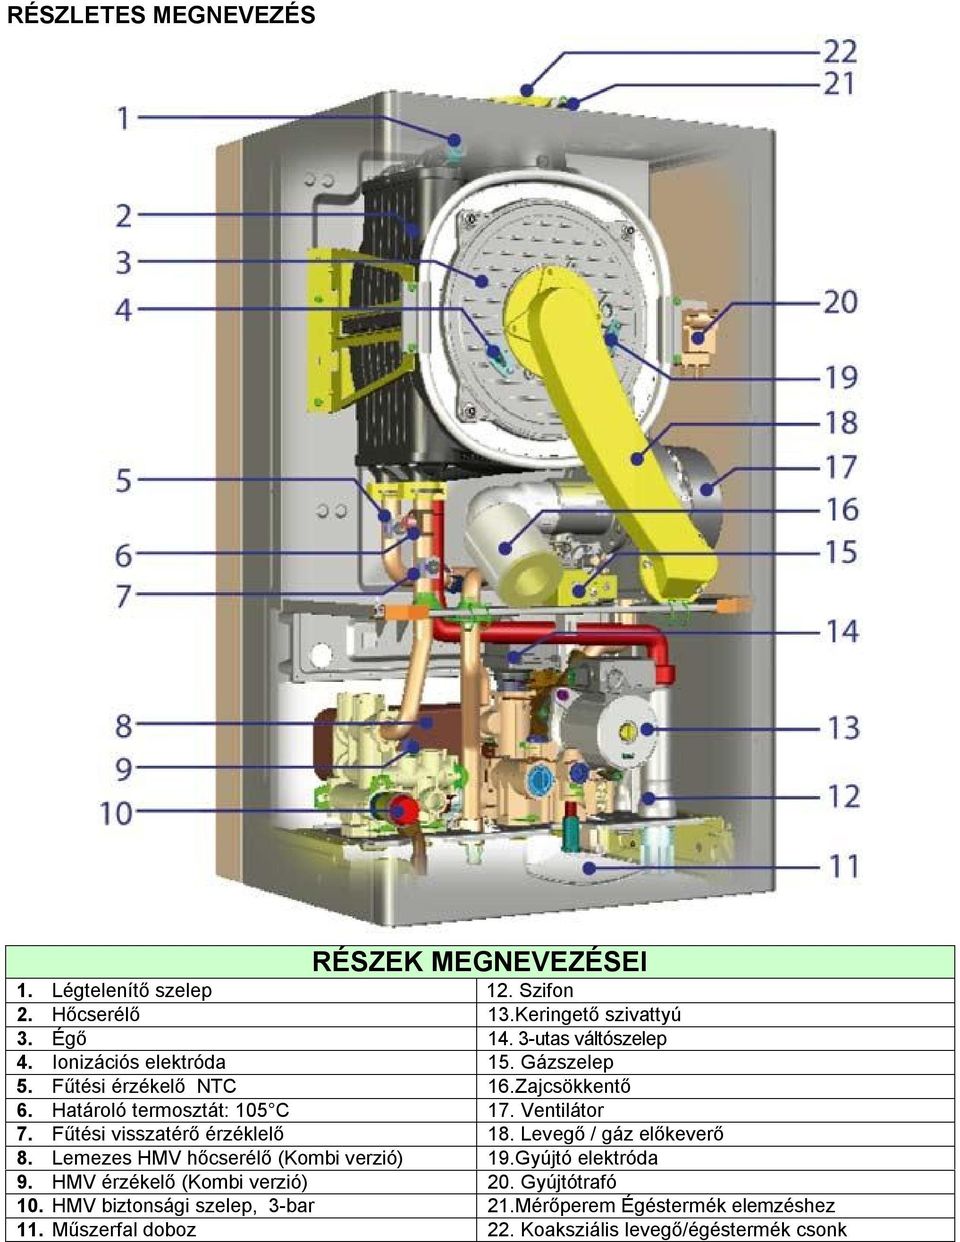 Ventilátor 7. Fűtési visszatérő érzéklelő 18. Levegő / gáz előkeverő 8. Lemezes HMV hőcserélő (Kombi verzió) 19.Gyújtó elektróda 9.